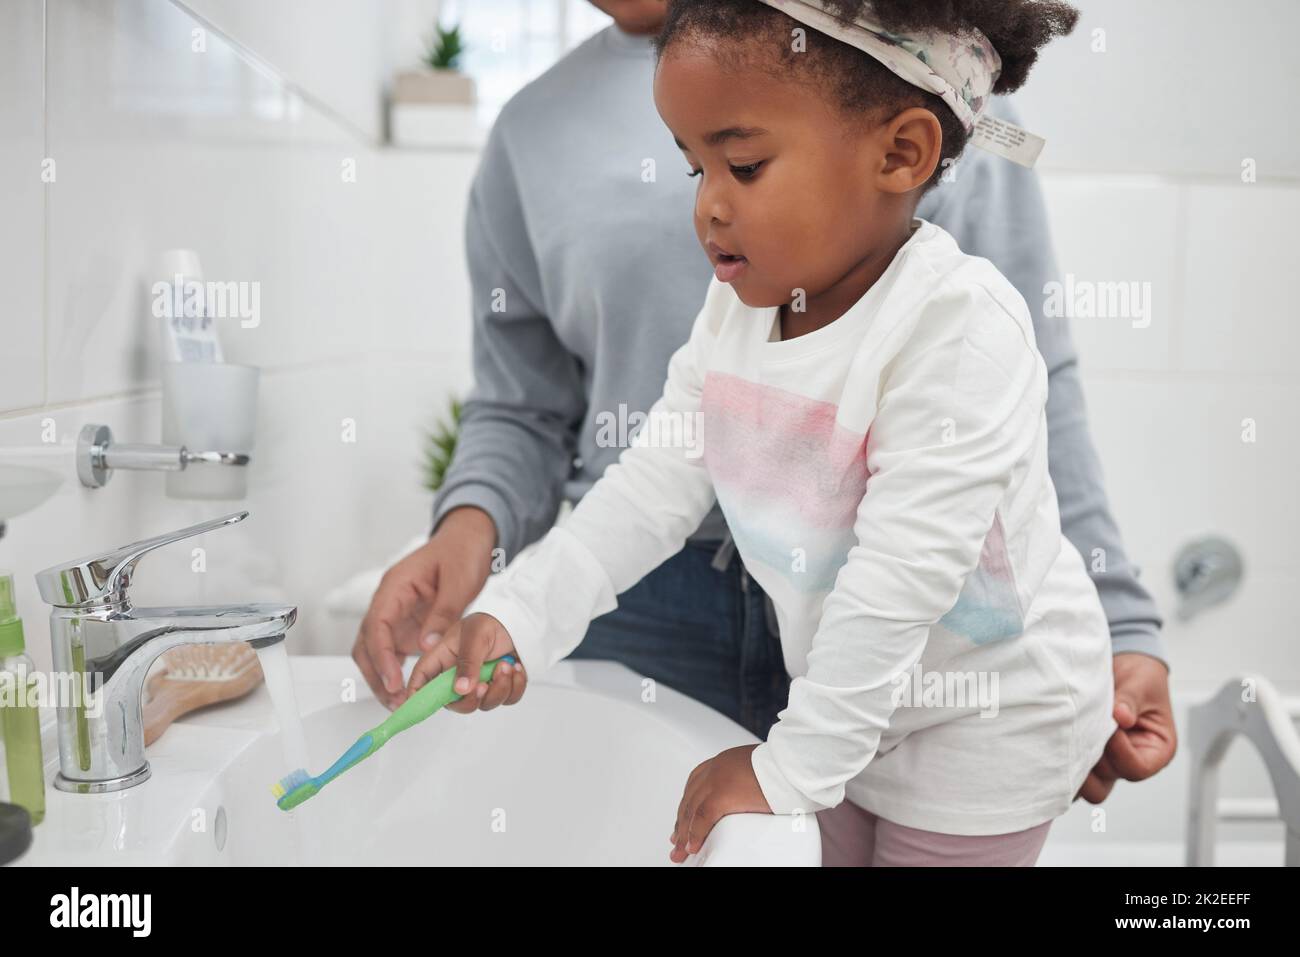 Schon in jungen Jahren alles über gute Hygiene lernen. Aufnahme einer Mutter, die ihrer kleinen Tochter hilft, ihre Zahnbürste zu Hause am Wasserhahn im Badezimmer zu spülen. Stockfoto